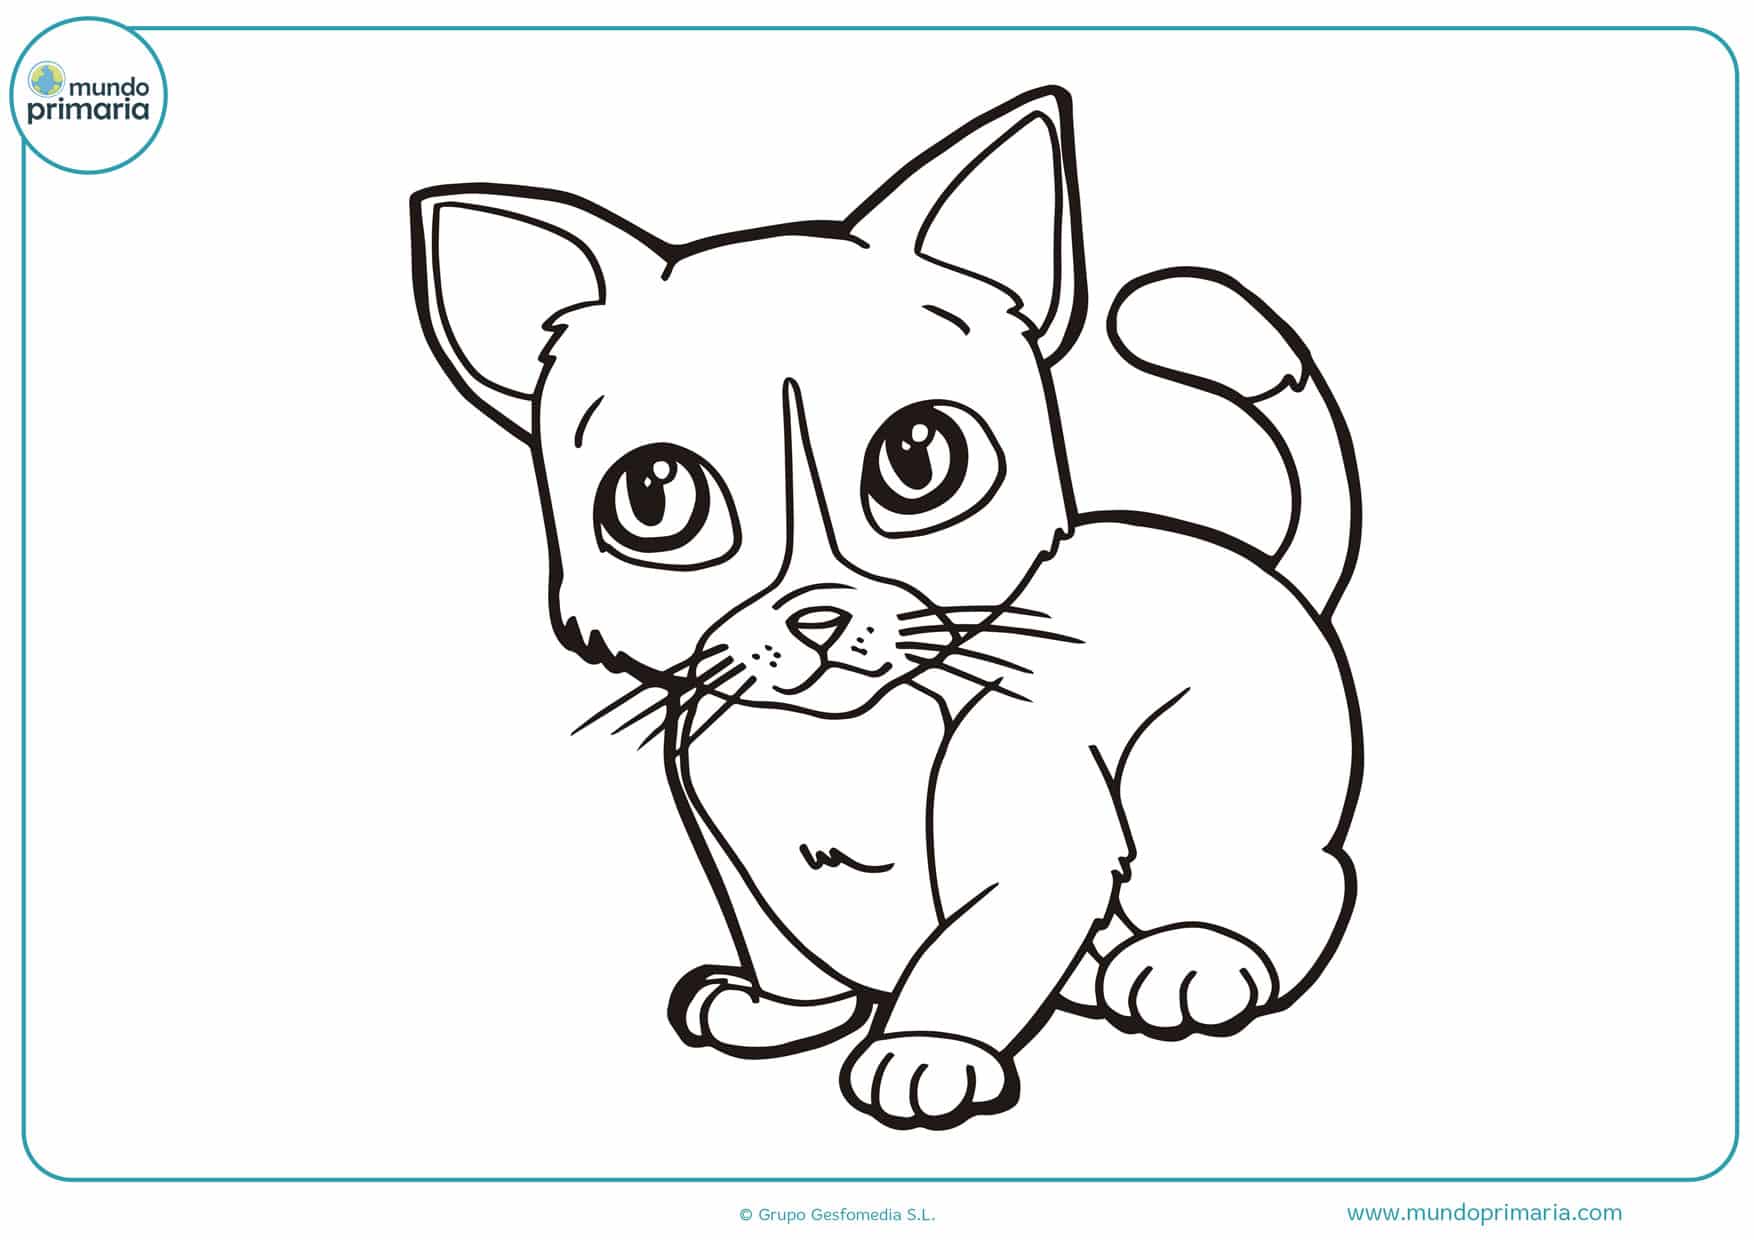 Dibujos de gatos para imprimir y colorear - Mundo Primaria